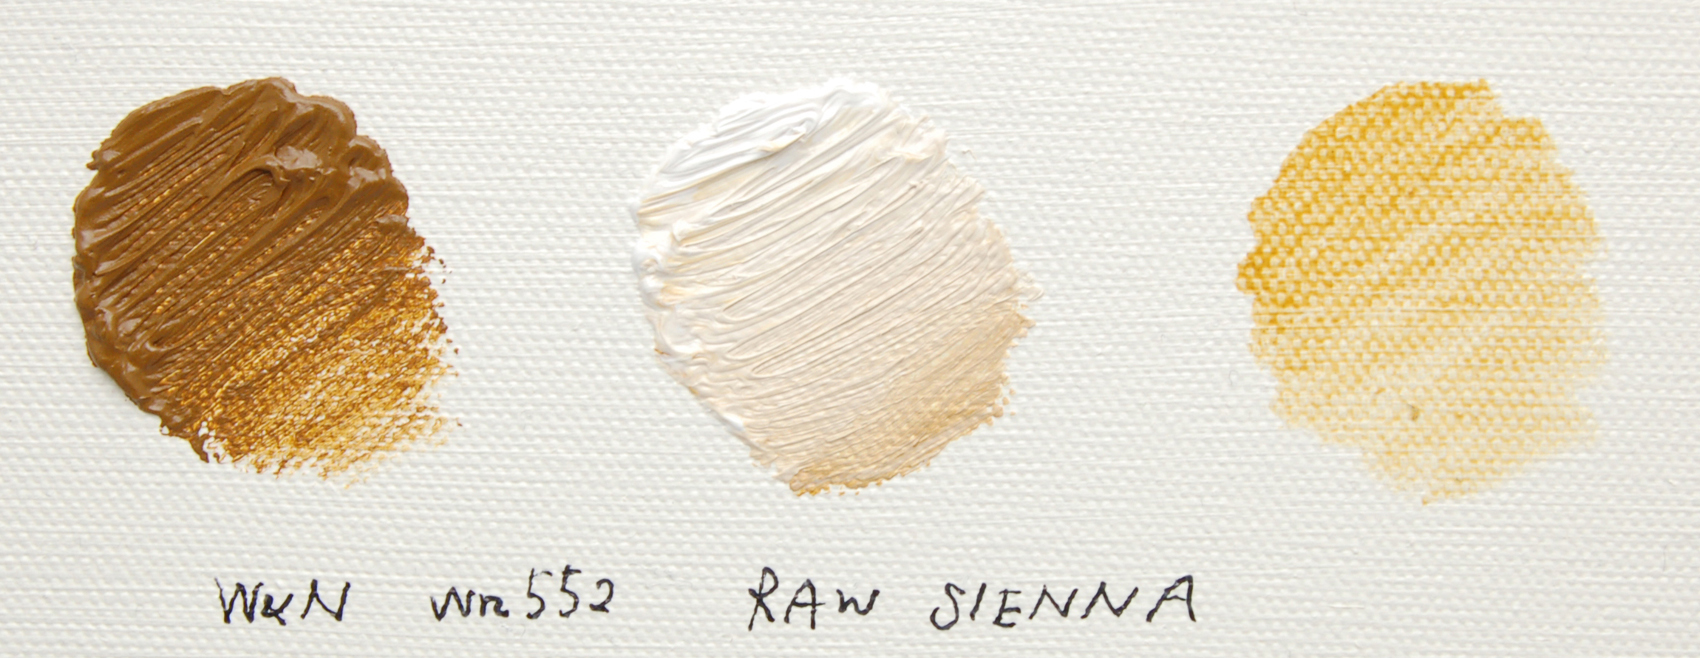 ローシェンナ/Raw Sienna